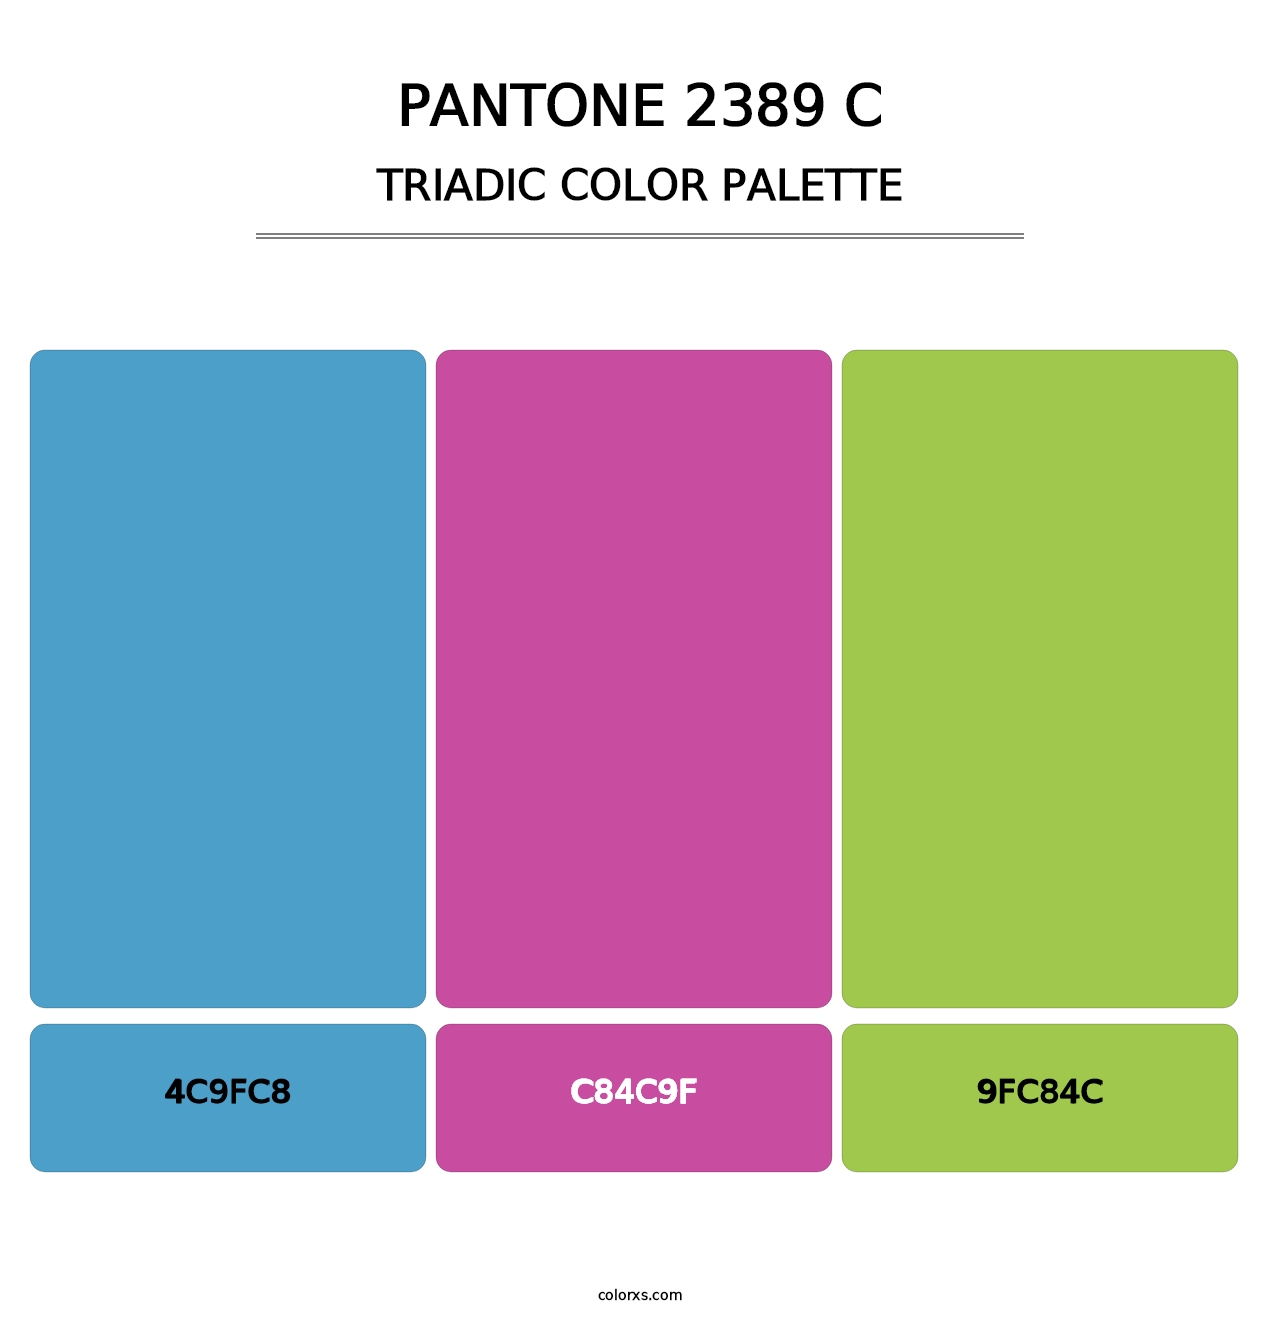 PANTONE 2389 C - Triadic Color Palette